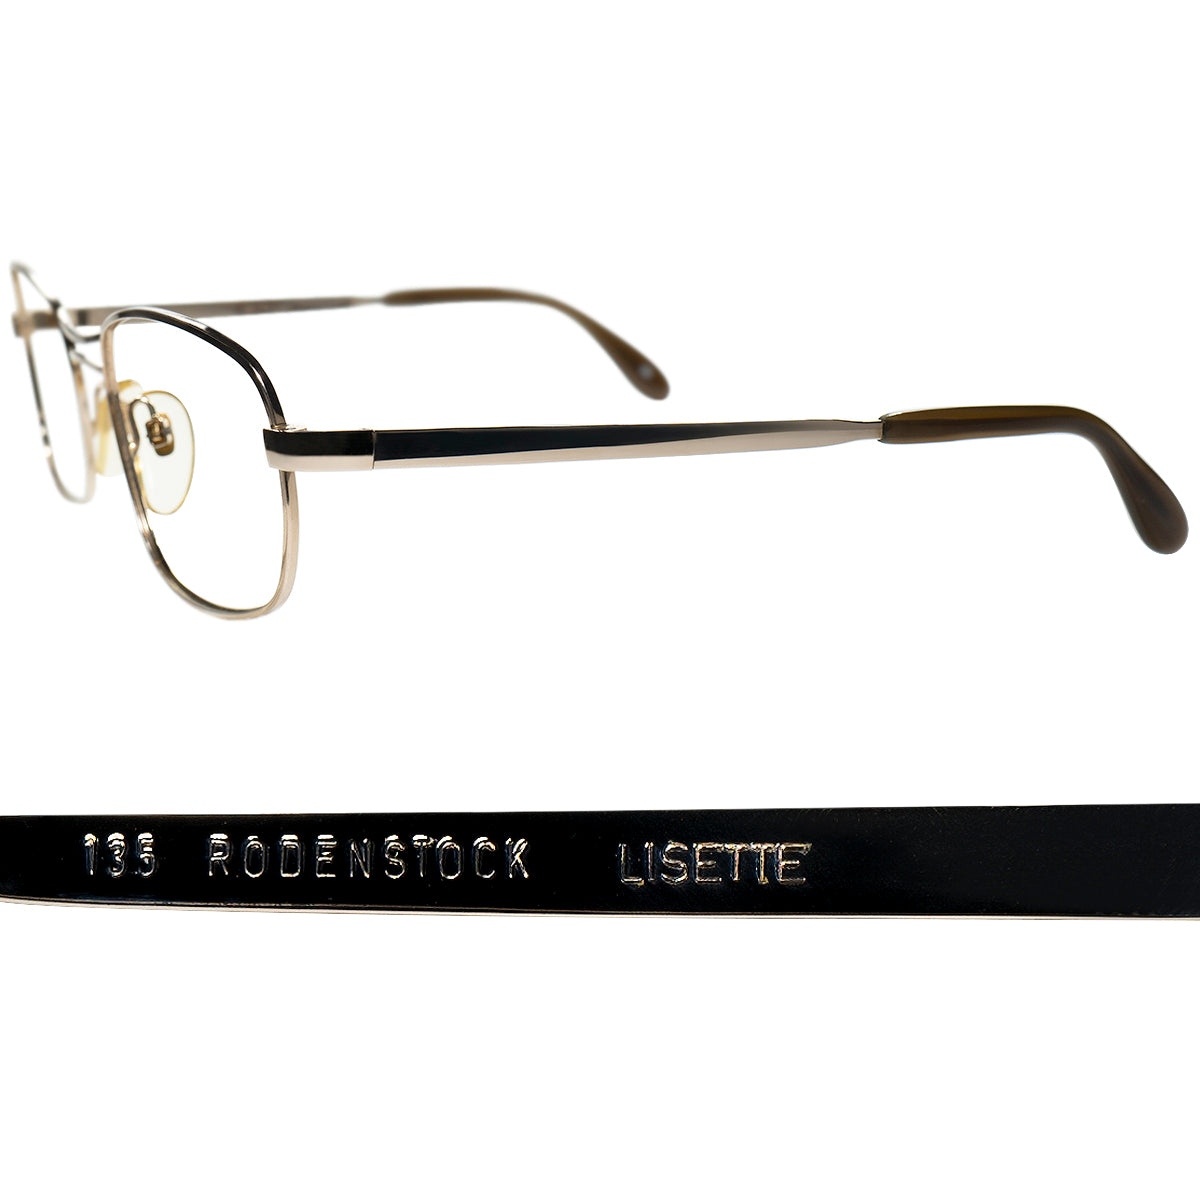 眼鏡としての段違いのポテンシャルの高さ 1960-70sデッドストック